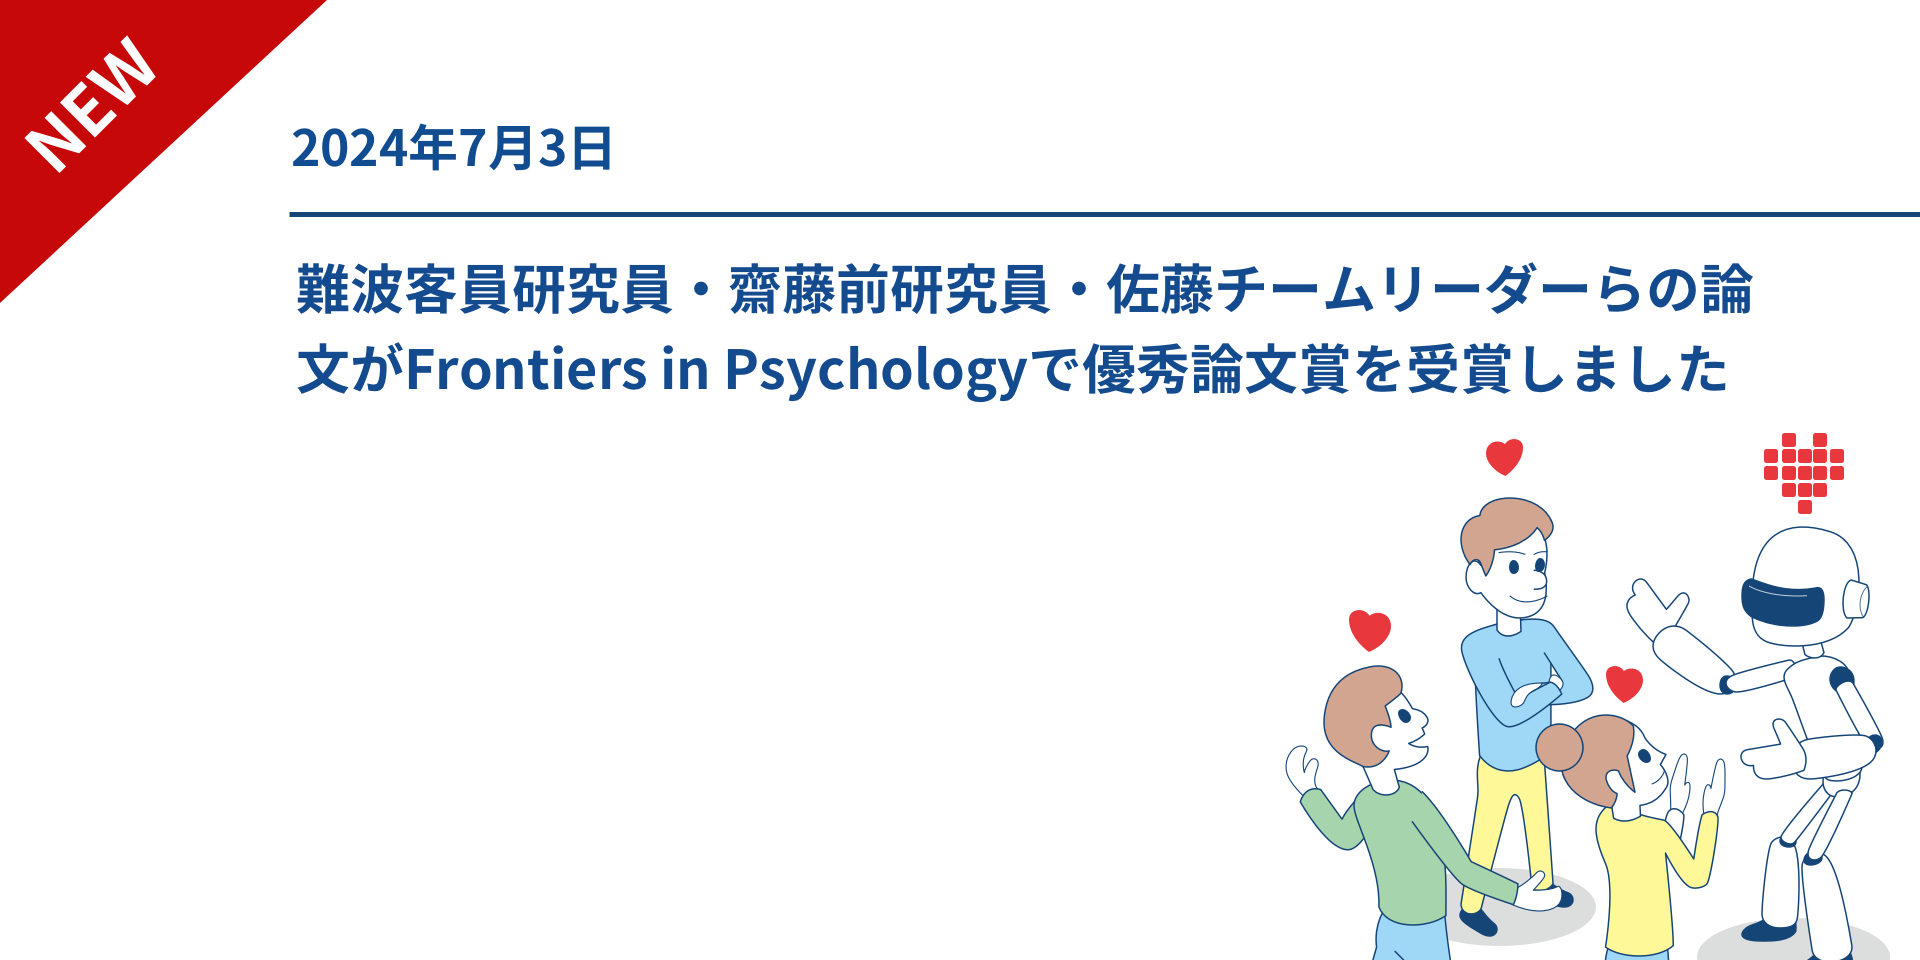 難波客員研究員・齋藤前研究員・佐藤チームリーダーらの論文がFrontiers in Psychologyで優秀論文賞を受賞しました